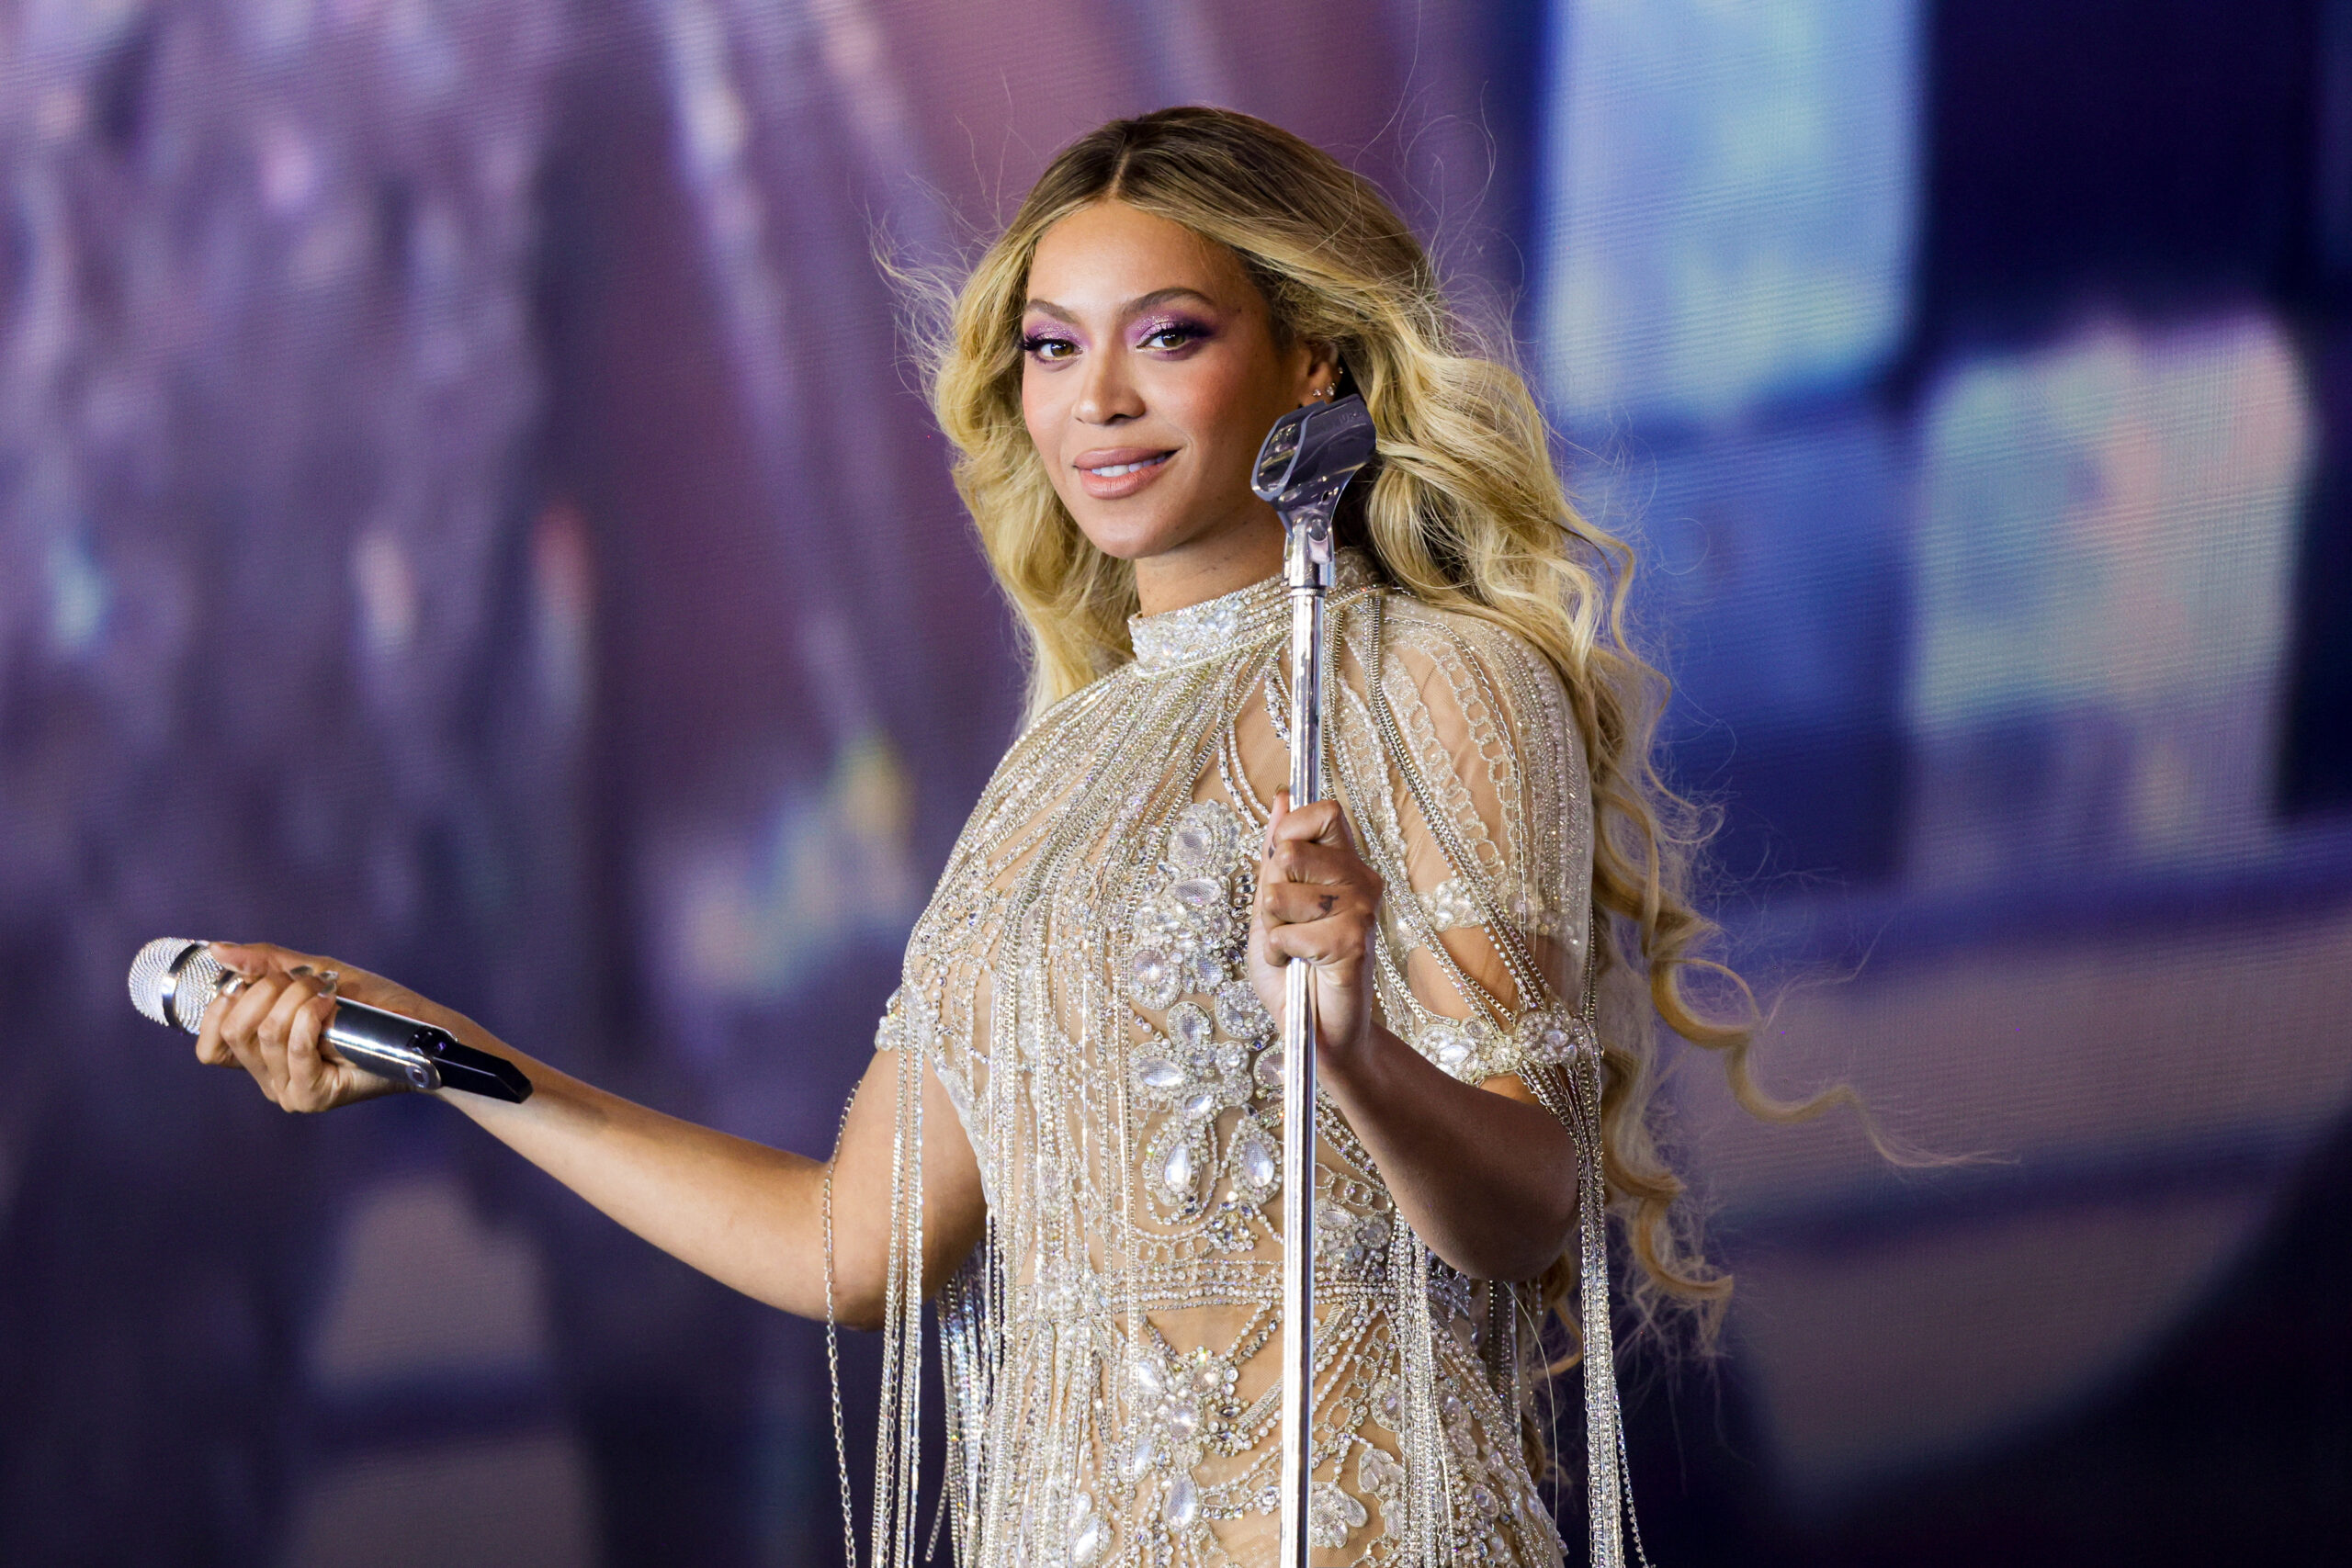 Em rara entrevista, Beyoncé revela mudança na aparência que foi um “ato de rebelião”